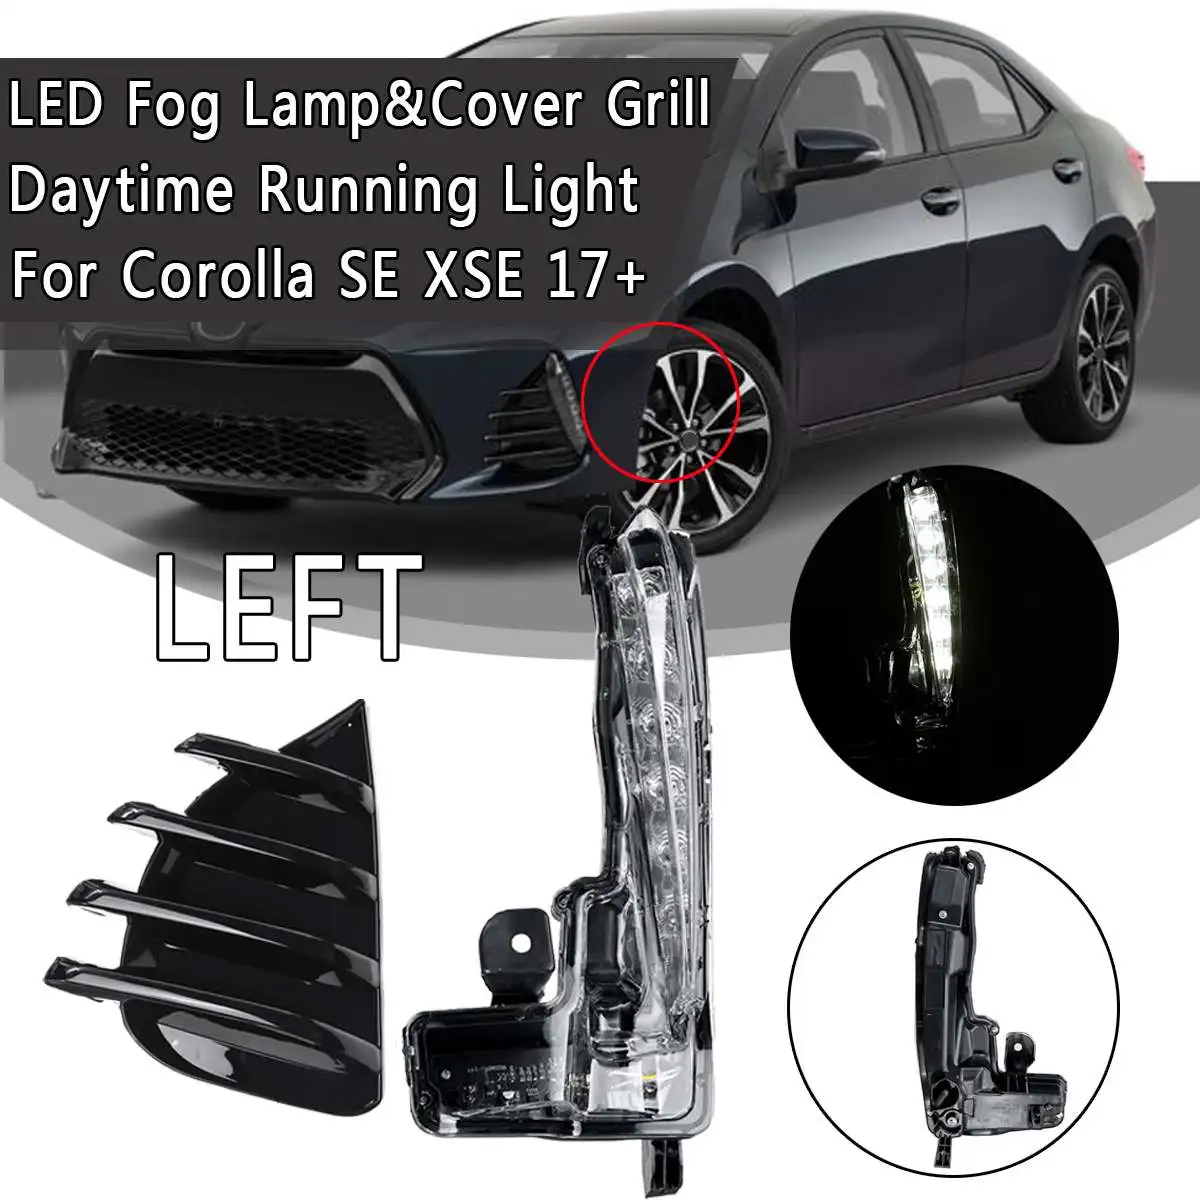 1 шт. бампер светодиодный противотуманный фонарь дневного света с противотуманной крышкой гриль для SE XSE+ 81482-02670 - Испускаемый цвет: Left set